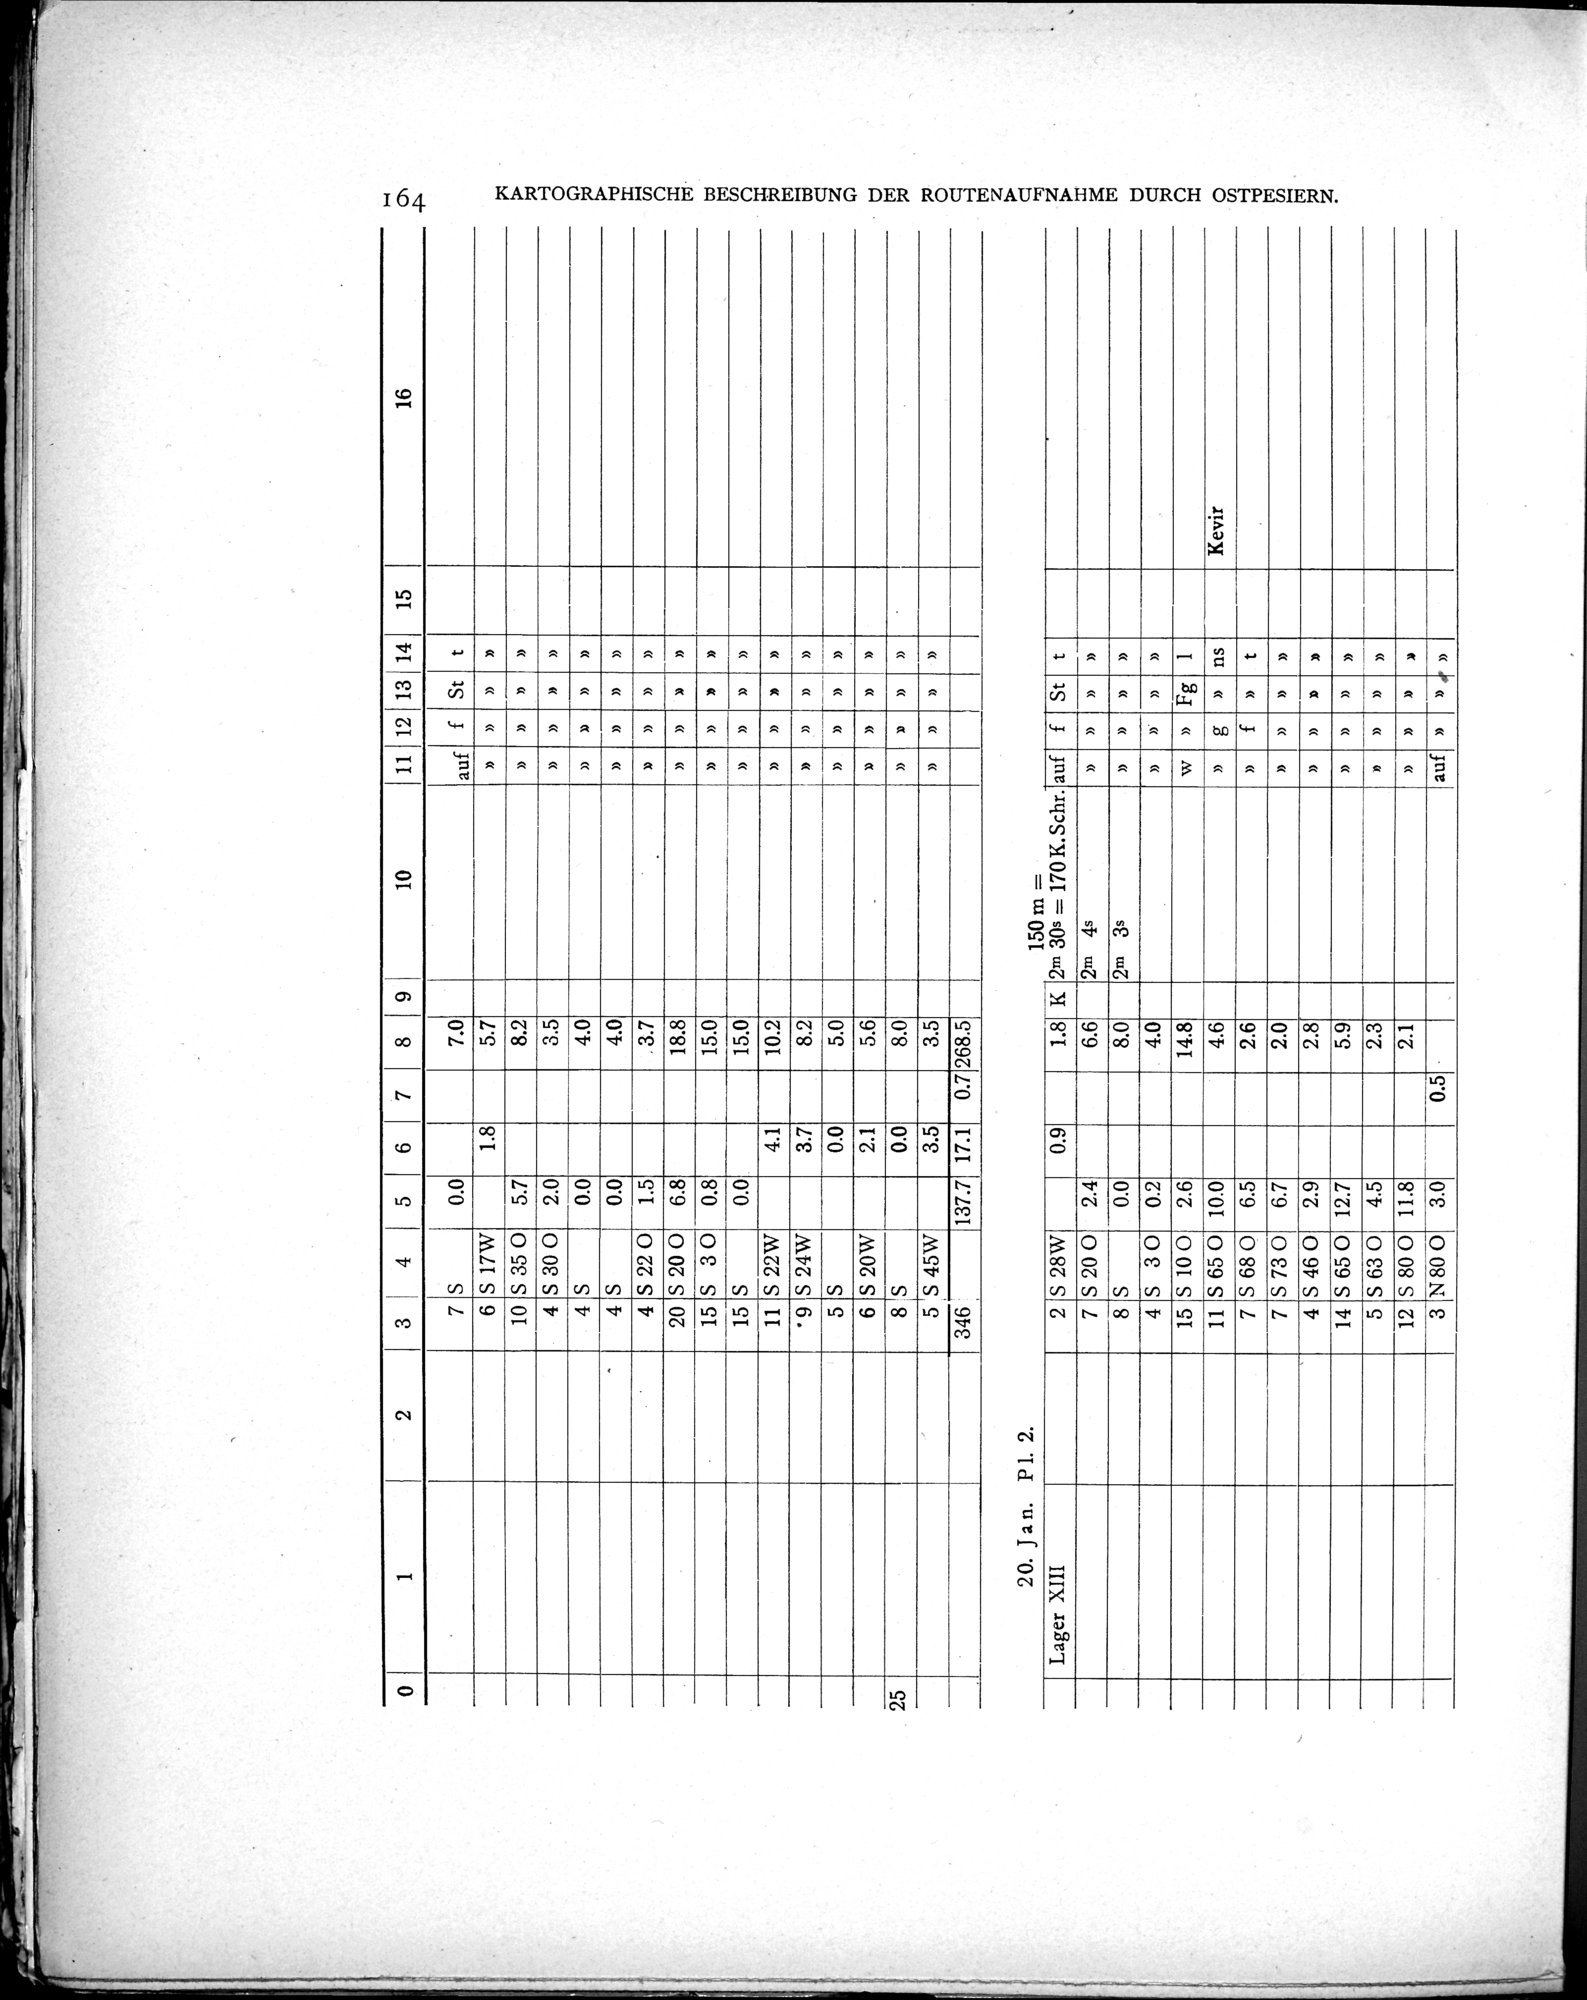 Eine Routenaufnahme durch Ostpersien : vol.2 / Page 234 (Grayscale High Resolution Image)